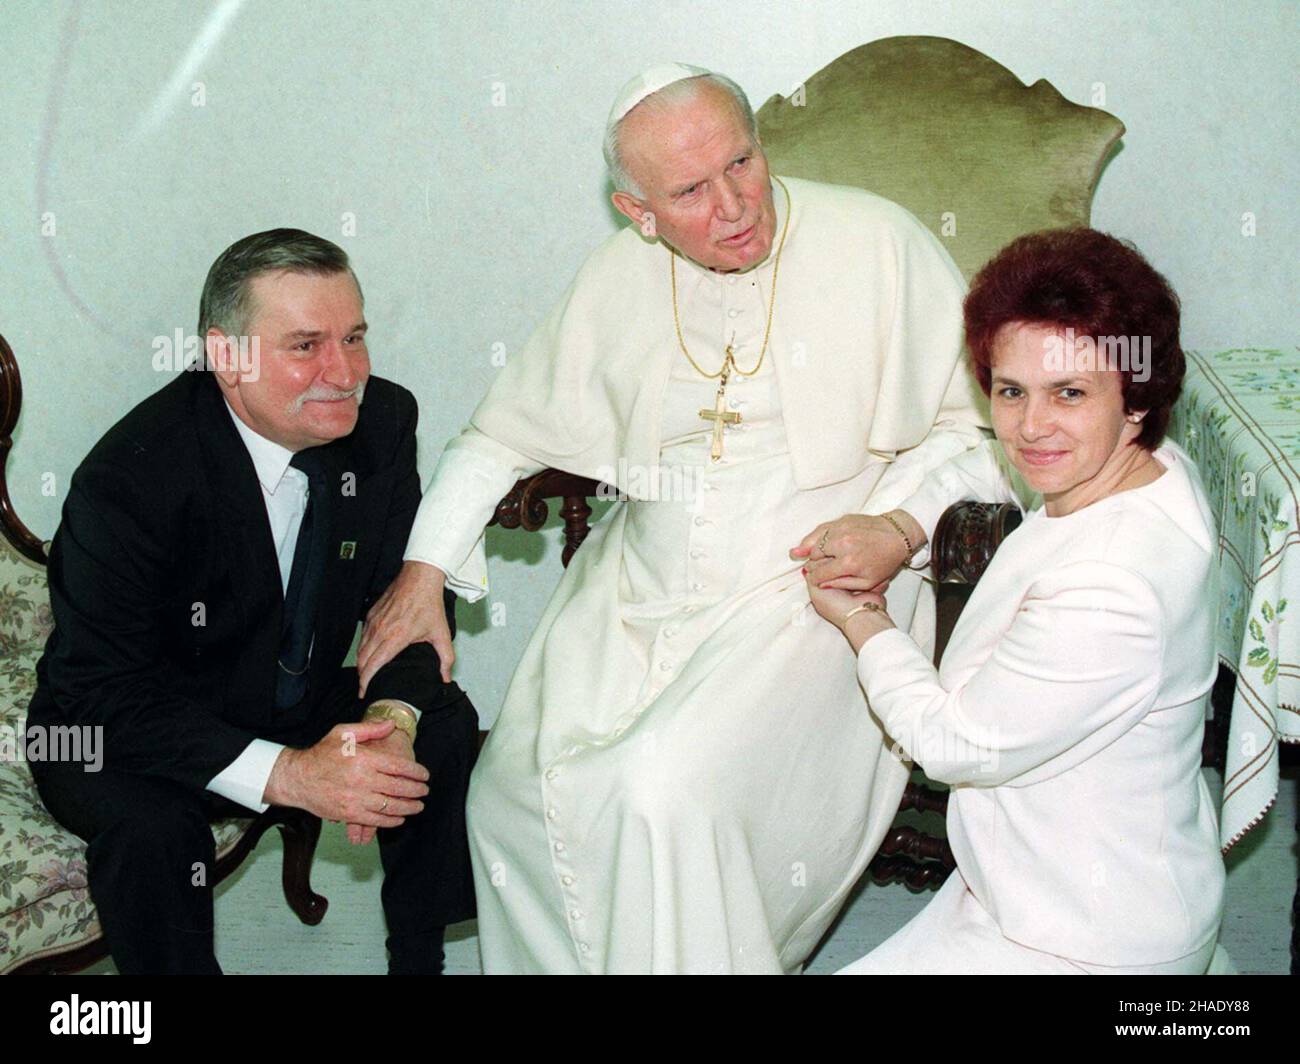 Rzym, W³ochy. 19.05.1994. Prezydent Lech Wa³êsa (L) z ma³¿onk¹ Danut¹ (P) odwiedzili papie¿a Jana Paw³a II w klinice Gemelli. (kru) PAP/Maciej B. Brzozowski Roma, Italia, 19.05.1994. Il Presidente Polonia Lech Walesa (L) con la moglie Danuta (R) ha incontrato il Papa Giovanni Poul II (C) presso l'Ospedale didattico Agostino Gemelli di Roma. (kru) PAP/Maciej B. Brzozowski Foto Stock